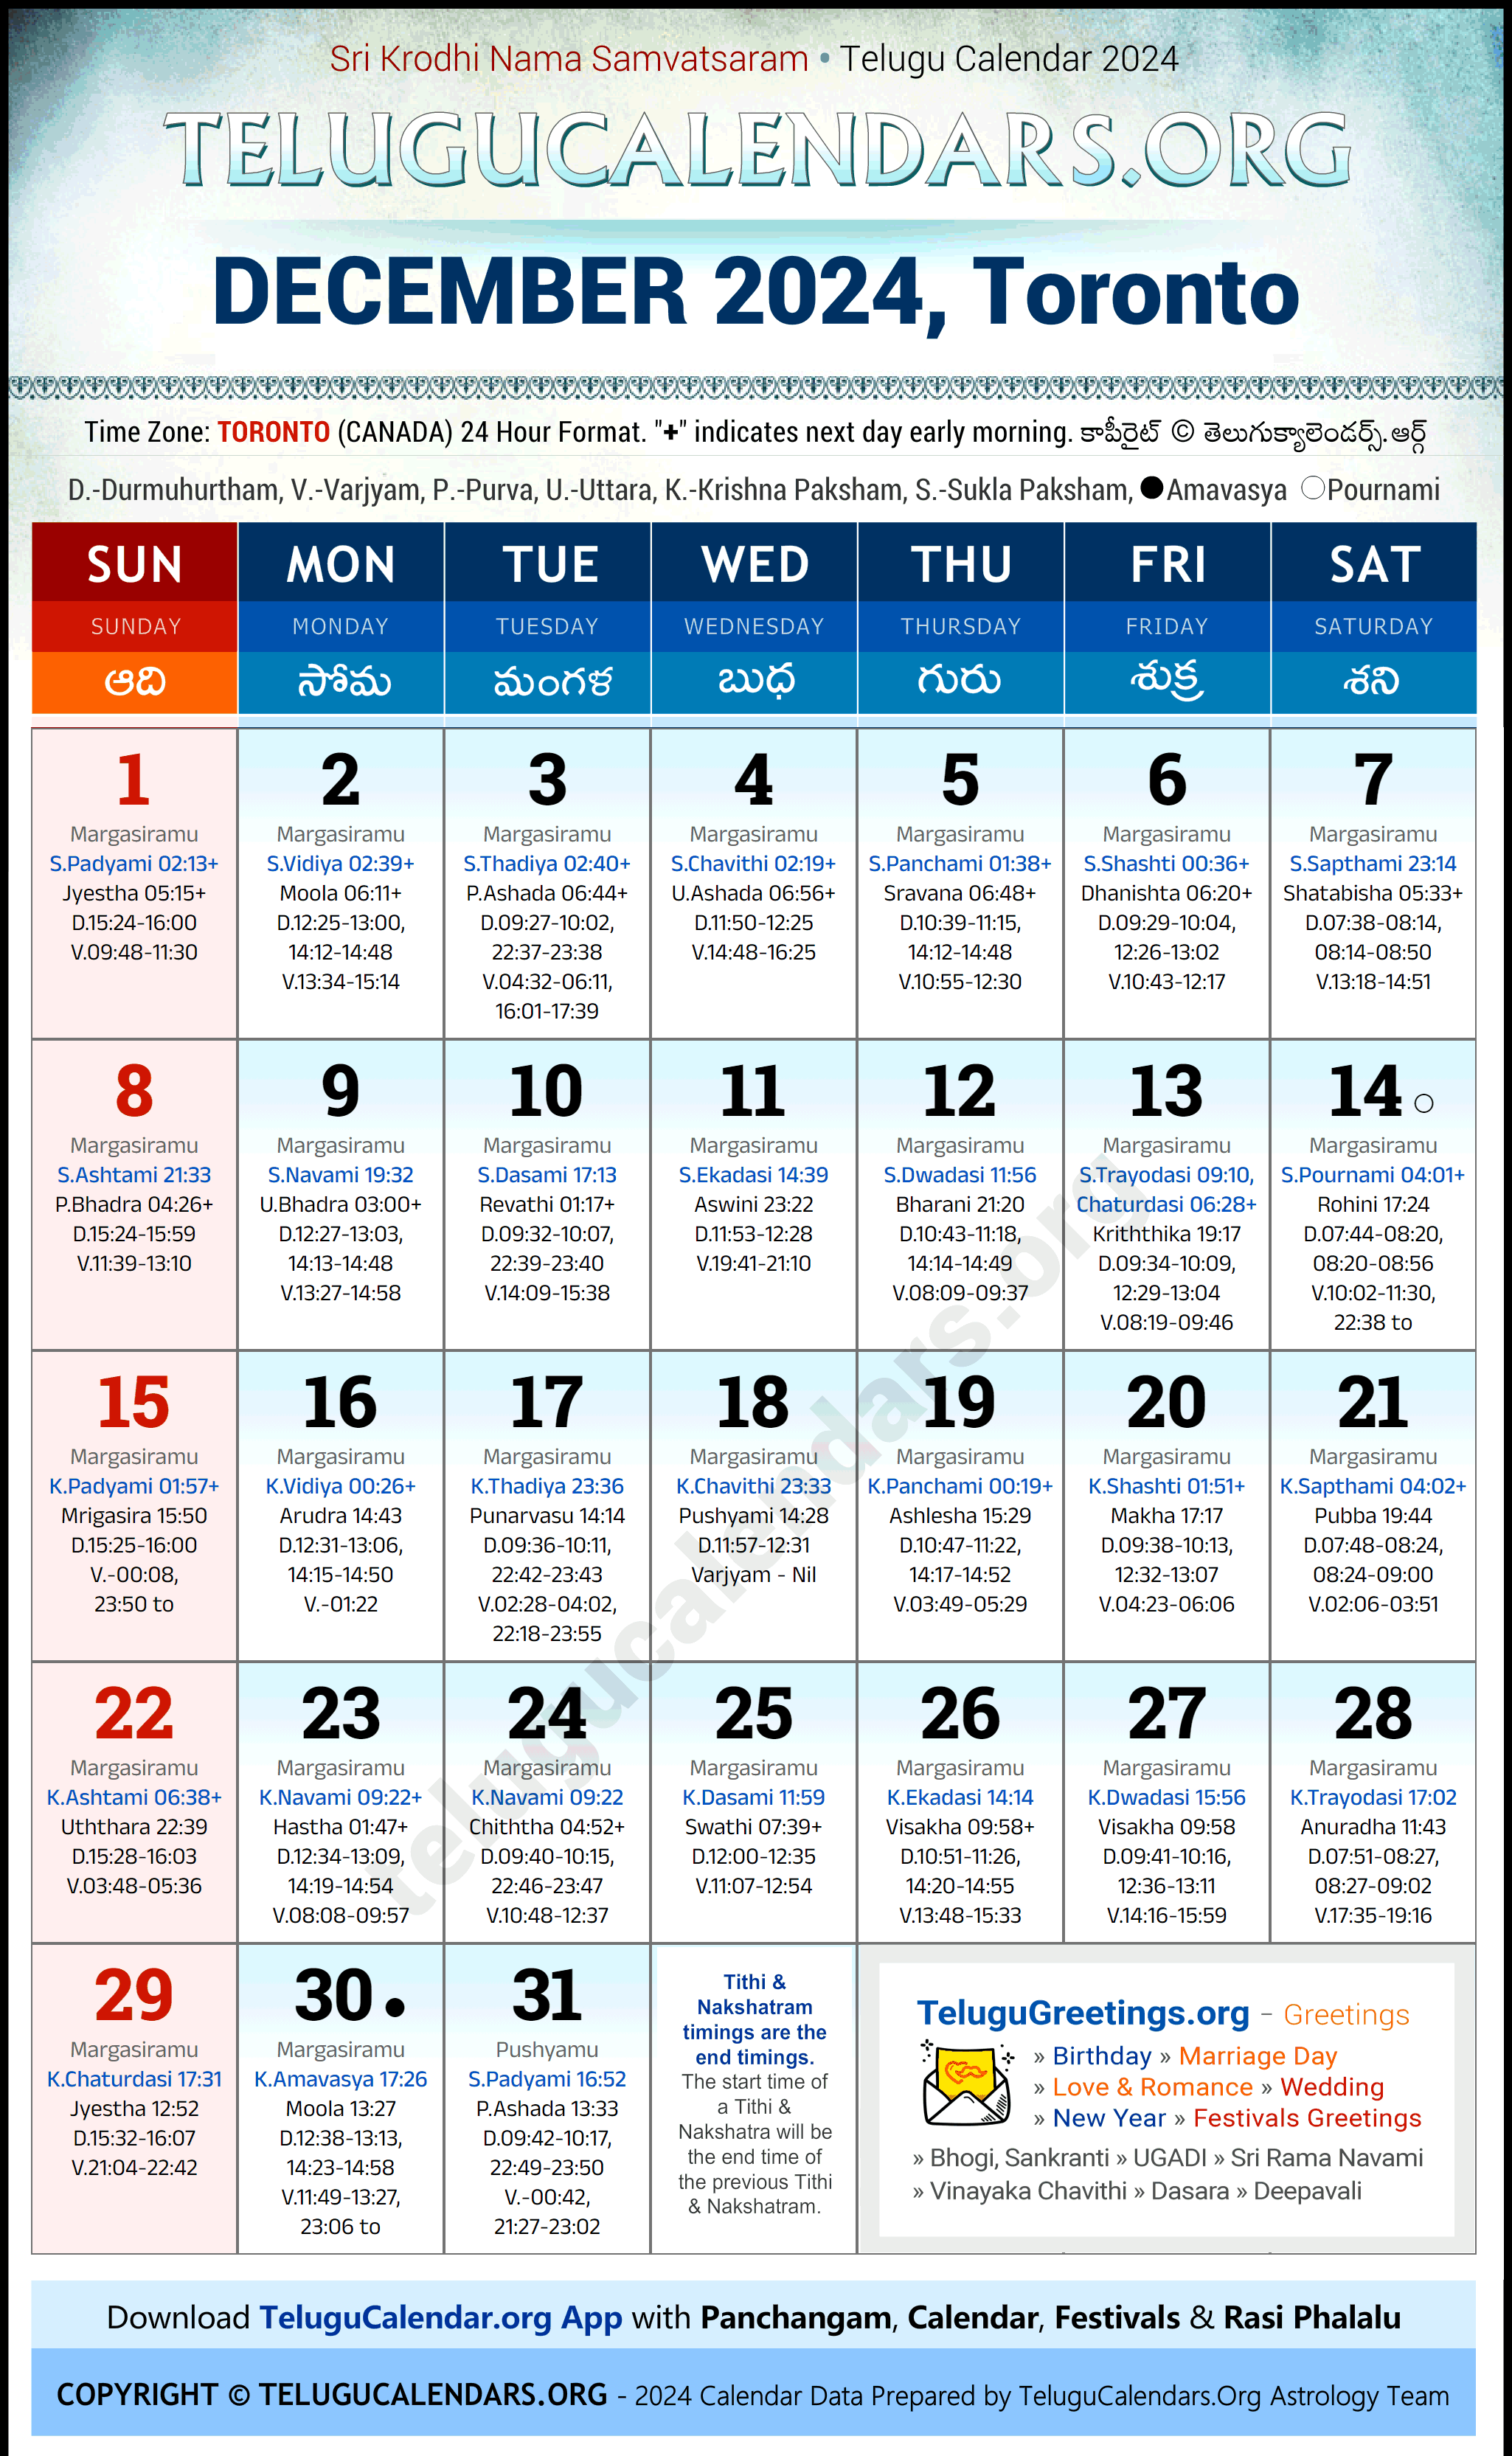 Telugu Calendar 2024 December Festivals for Toronto